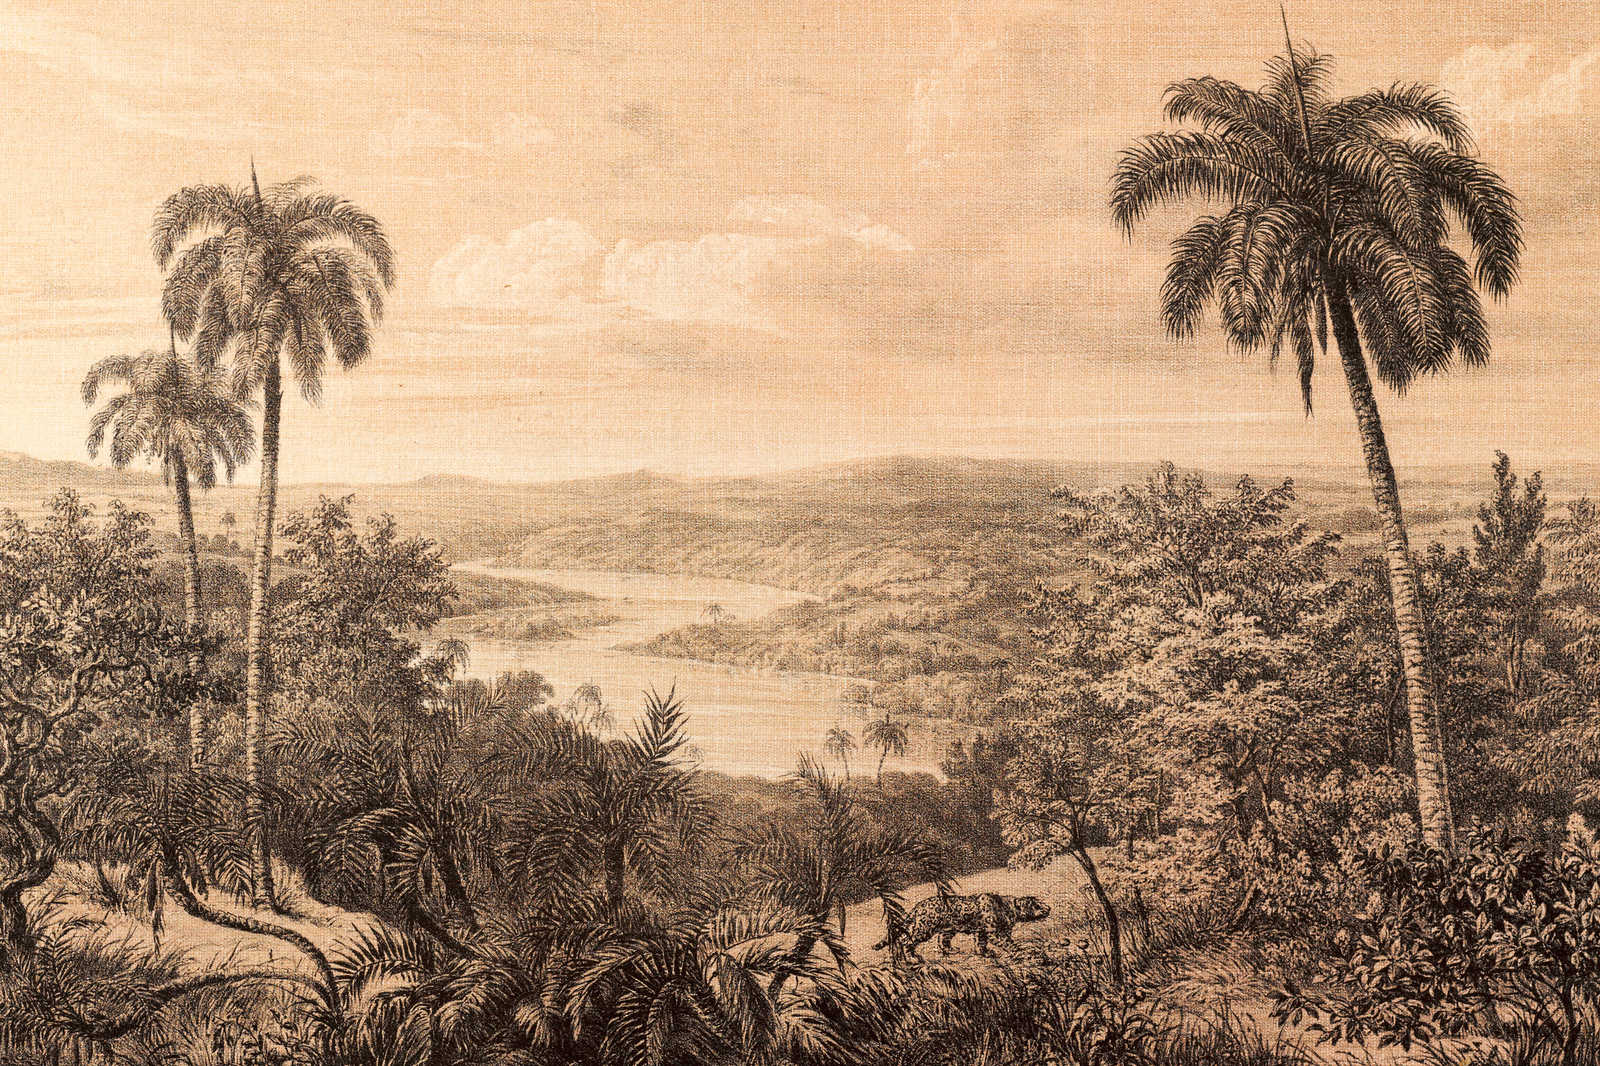             Tableau toile Vue sur la forêt tropicale avec aspect structuré de lin | beige, noir - 0,90 m x 0,60 m
        